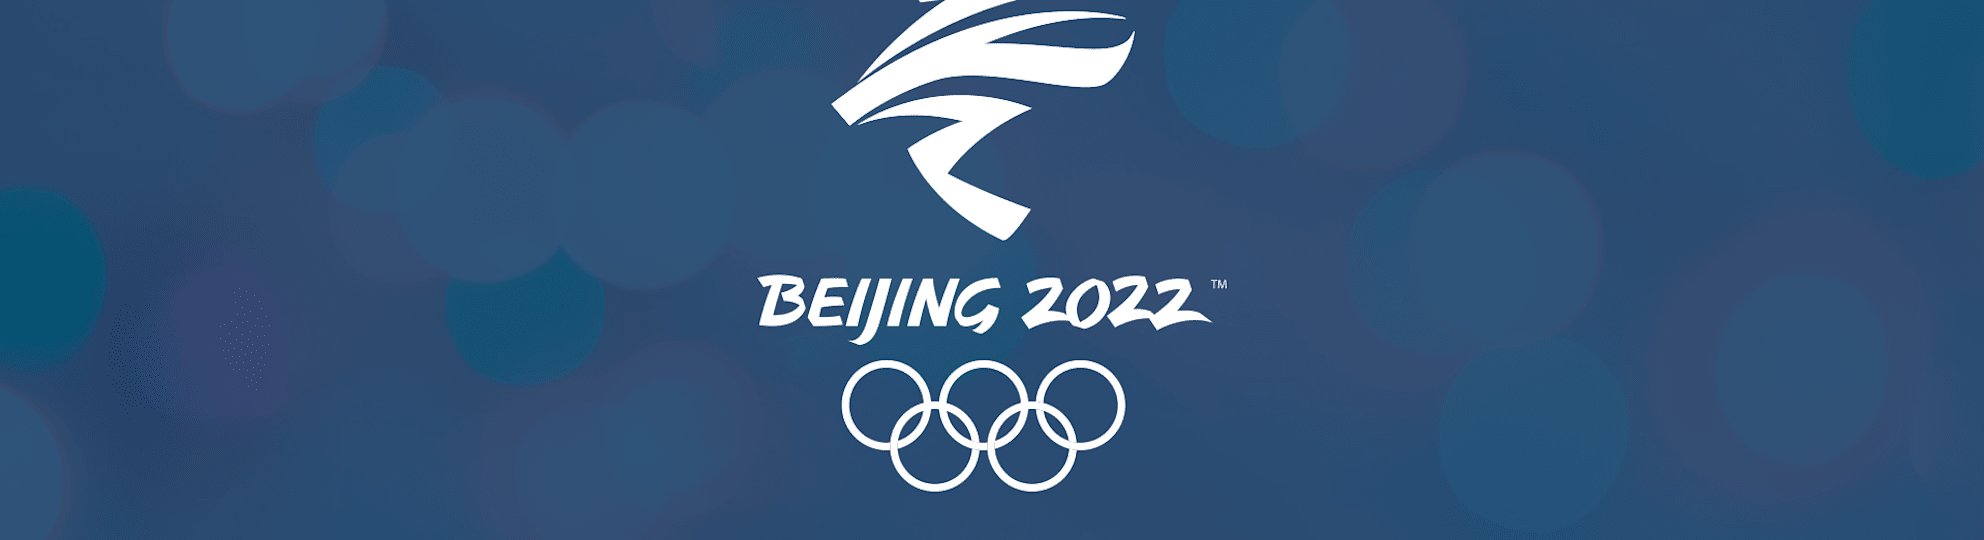 2022 冬季 オリンピック 2022 Winter